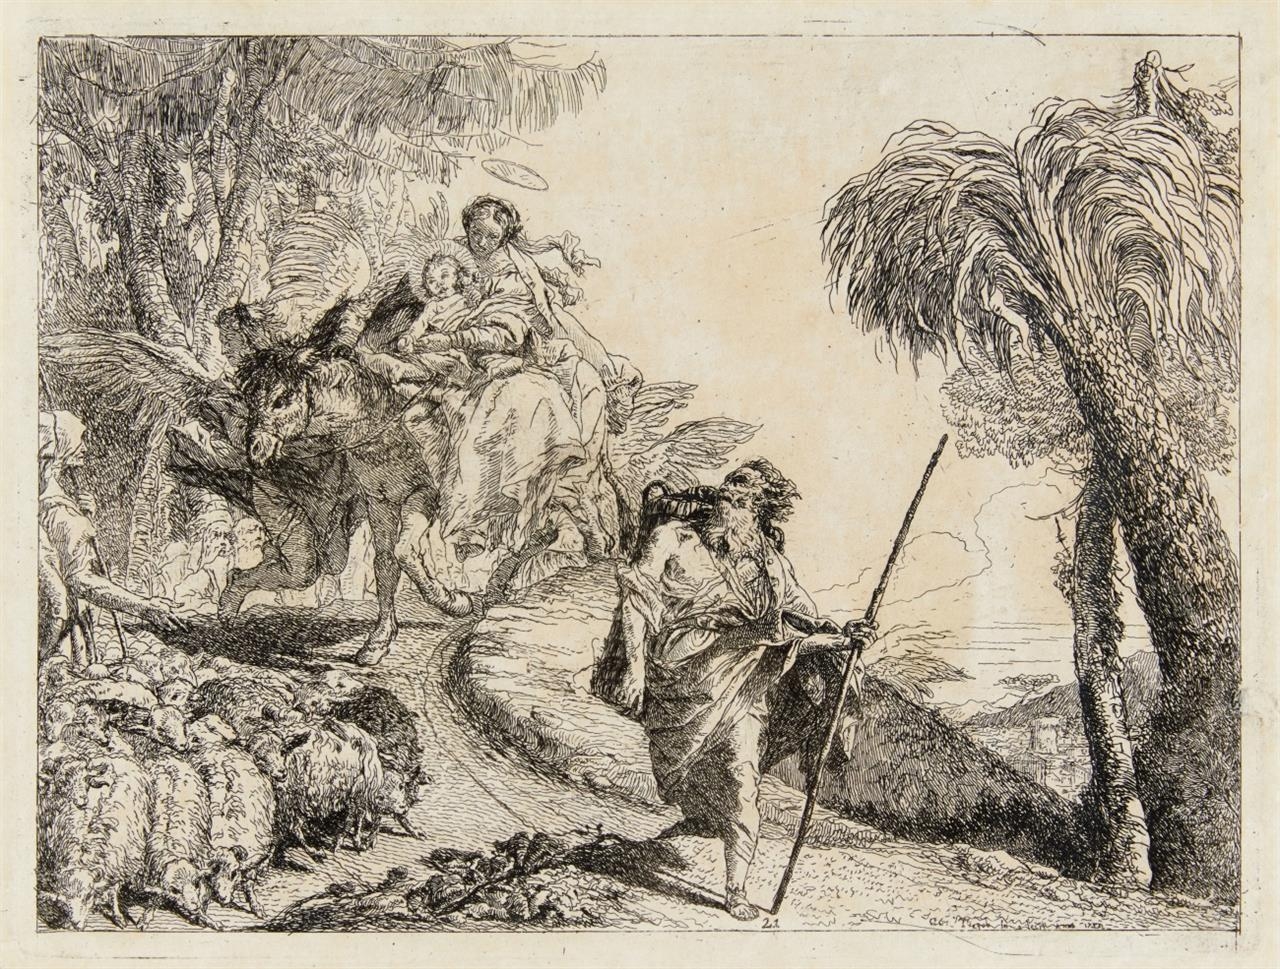 Die Heilige Familie kommt an einer Schafherde vorbei by Giovanni Domenico Tiepolo, 1753